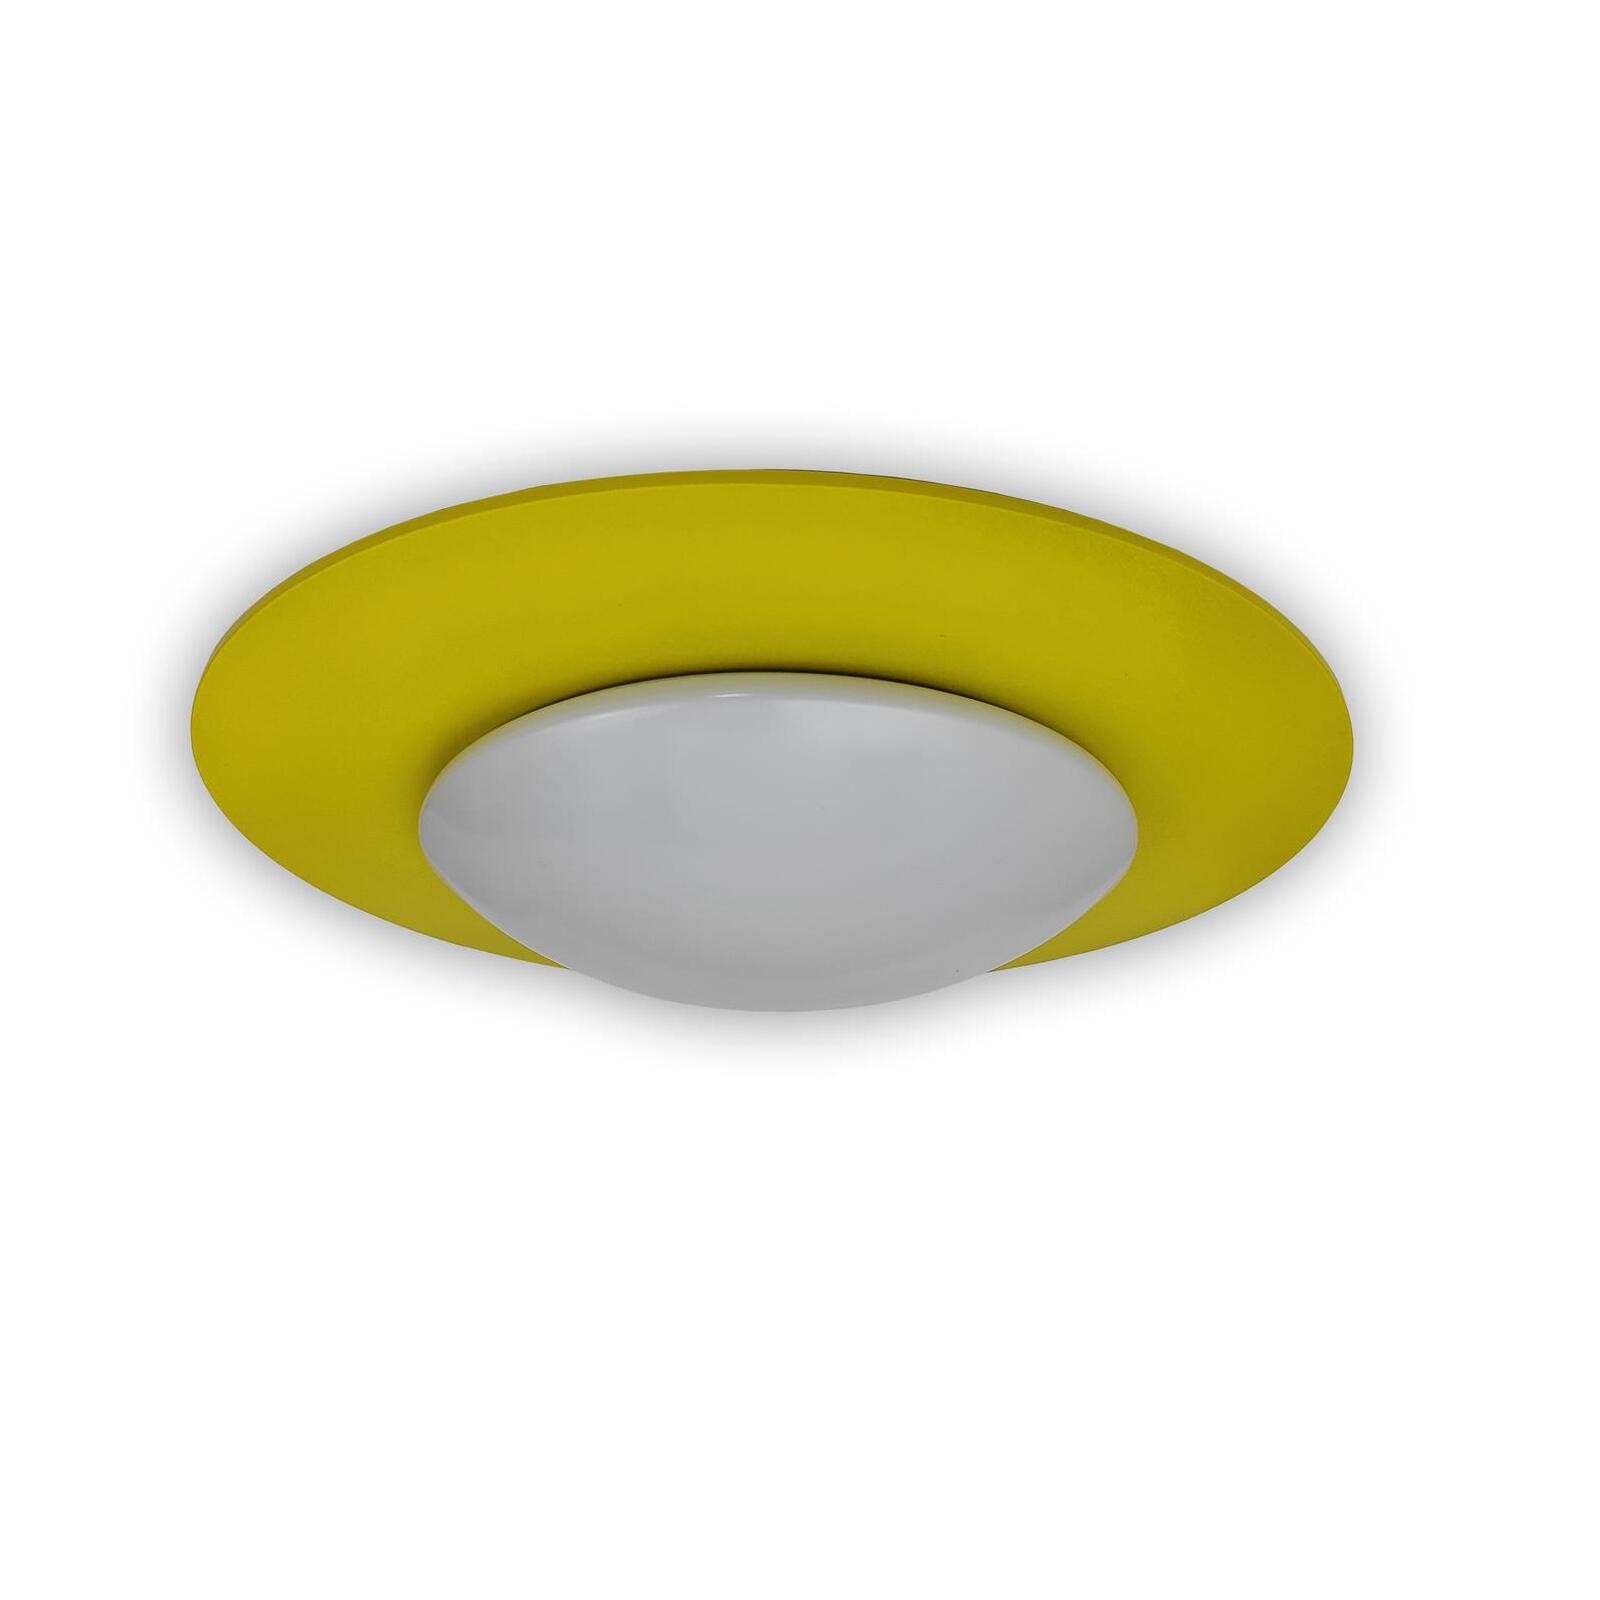 Sonnengelb - Deckenschale Lampen Leuchten & Saturn, Onlineshop